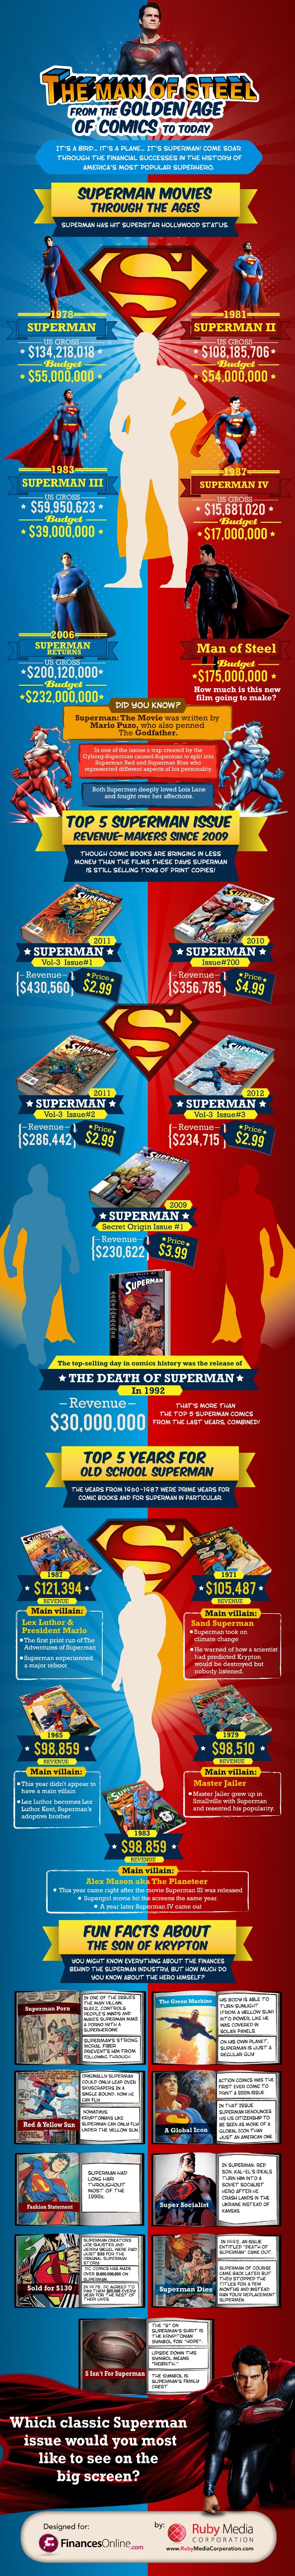 superman_infographic_manofsteel